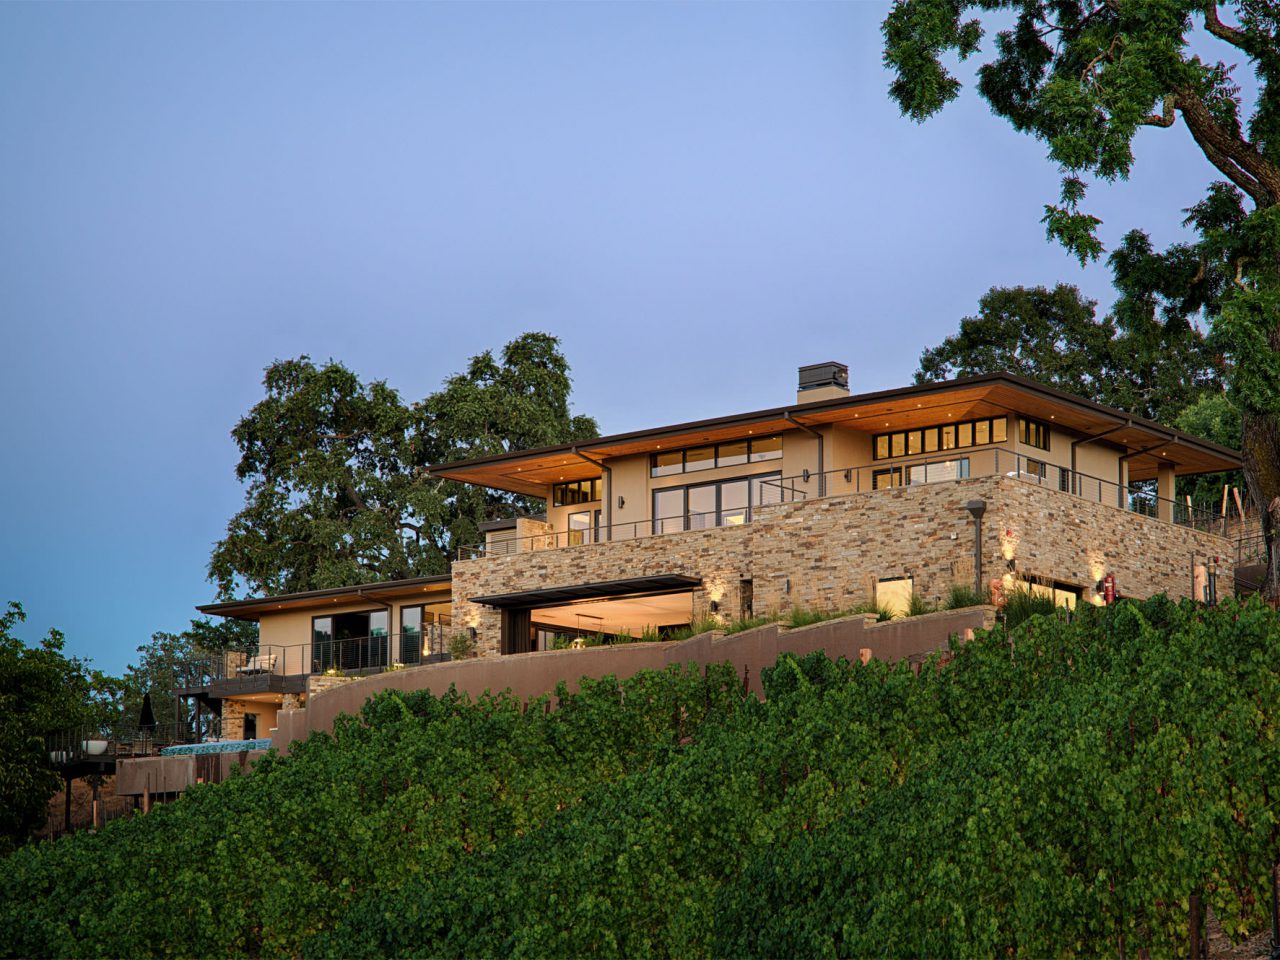 Oakville hillside residence placed in vineyards